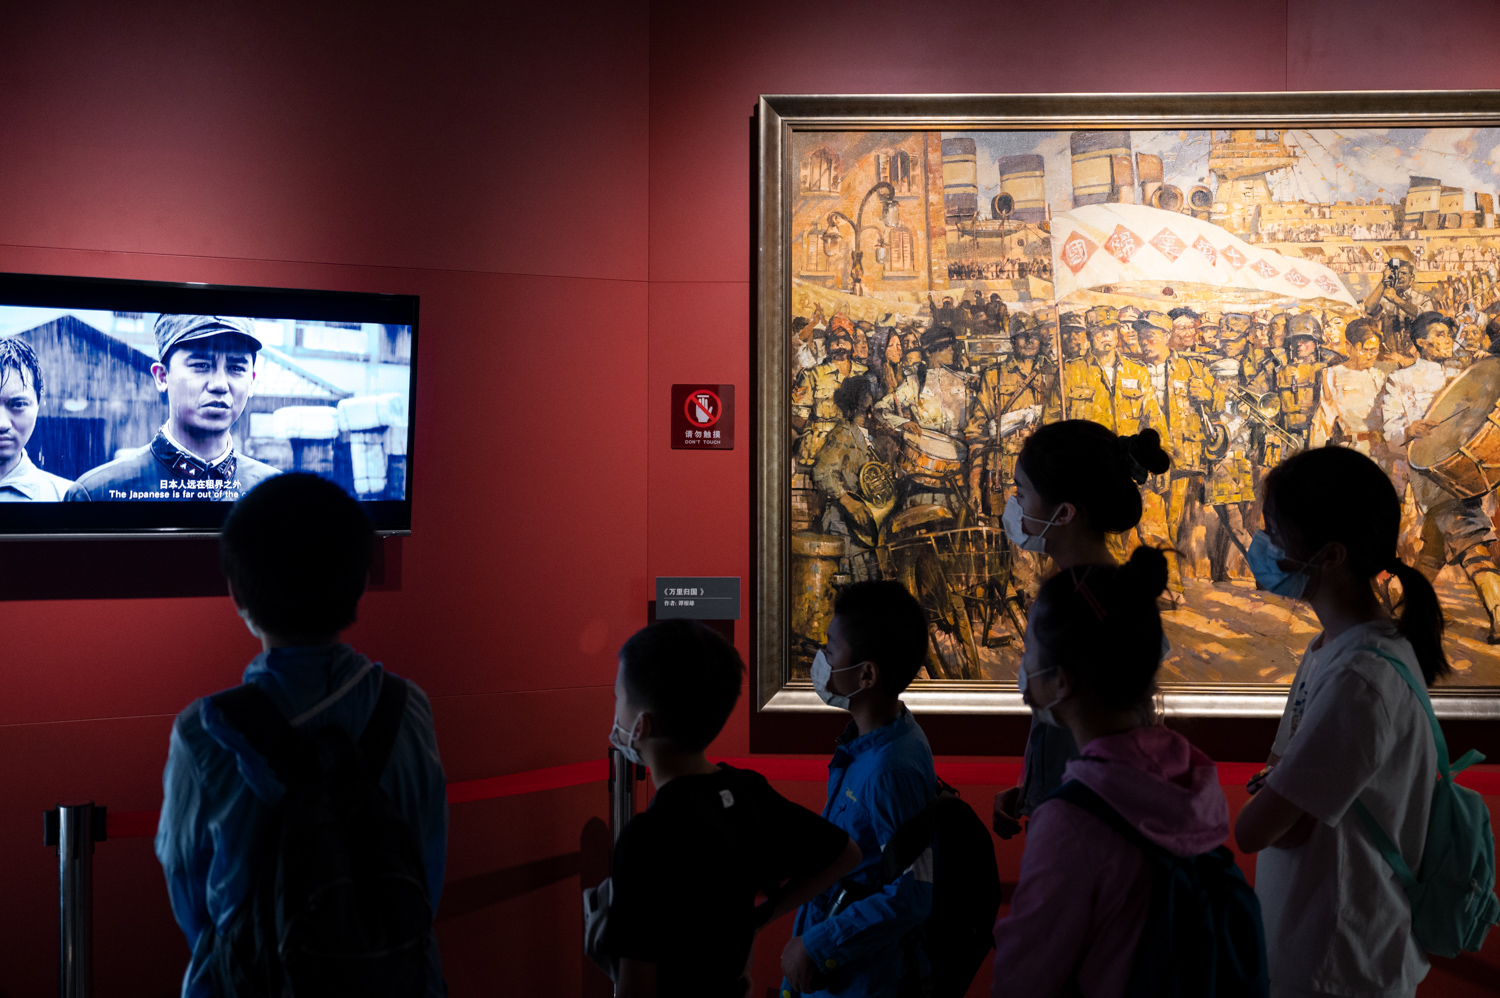 展厅内前来参观的游客正在观看屏幕上播放的相关短片。